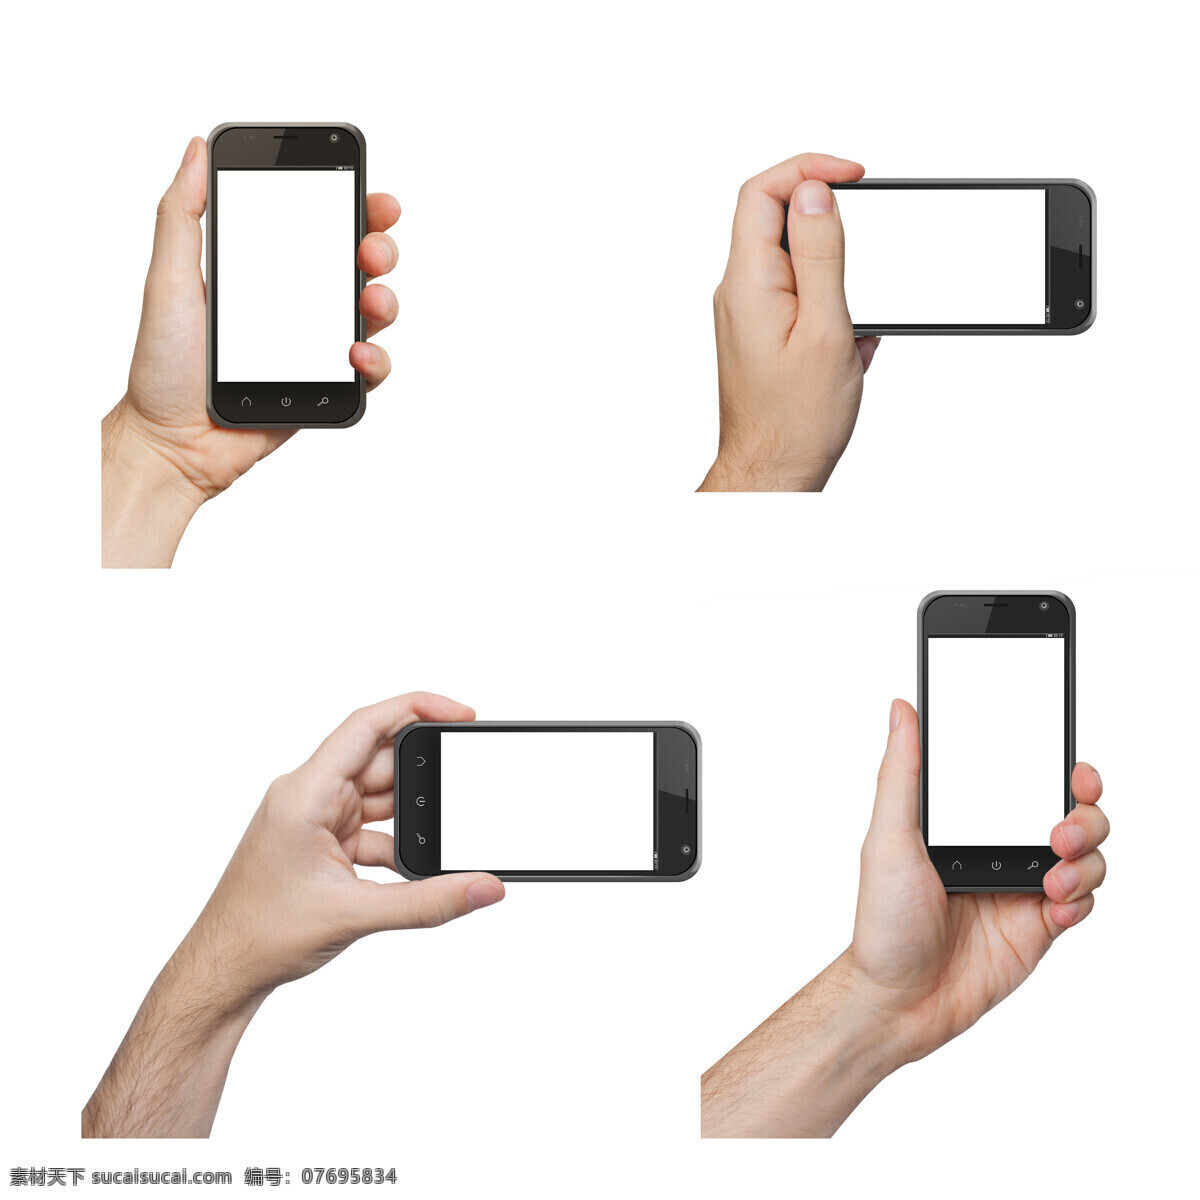 手机 拍照 手势 智能手机 拍照手势 通讯科技 手机拍照 手机图片 现代科技